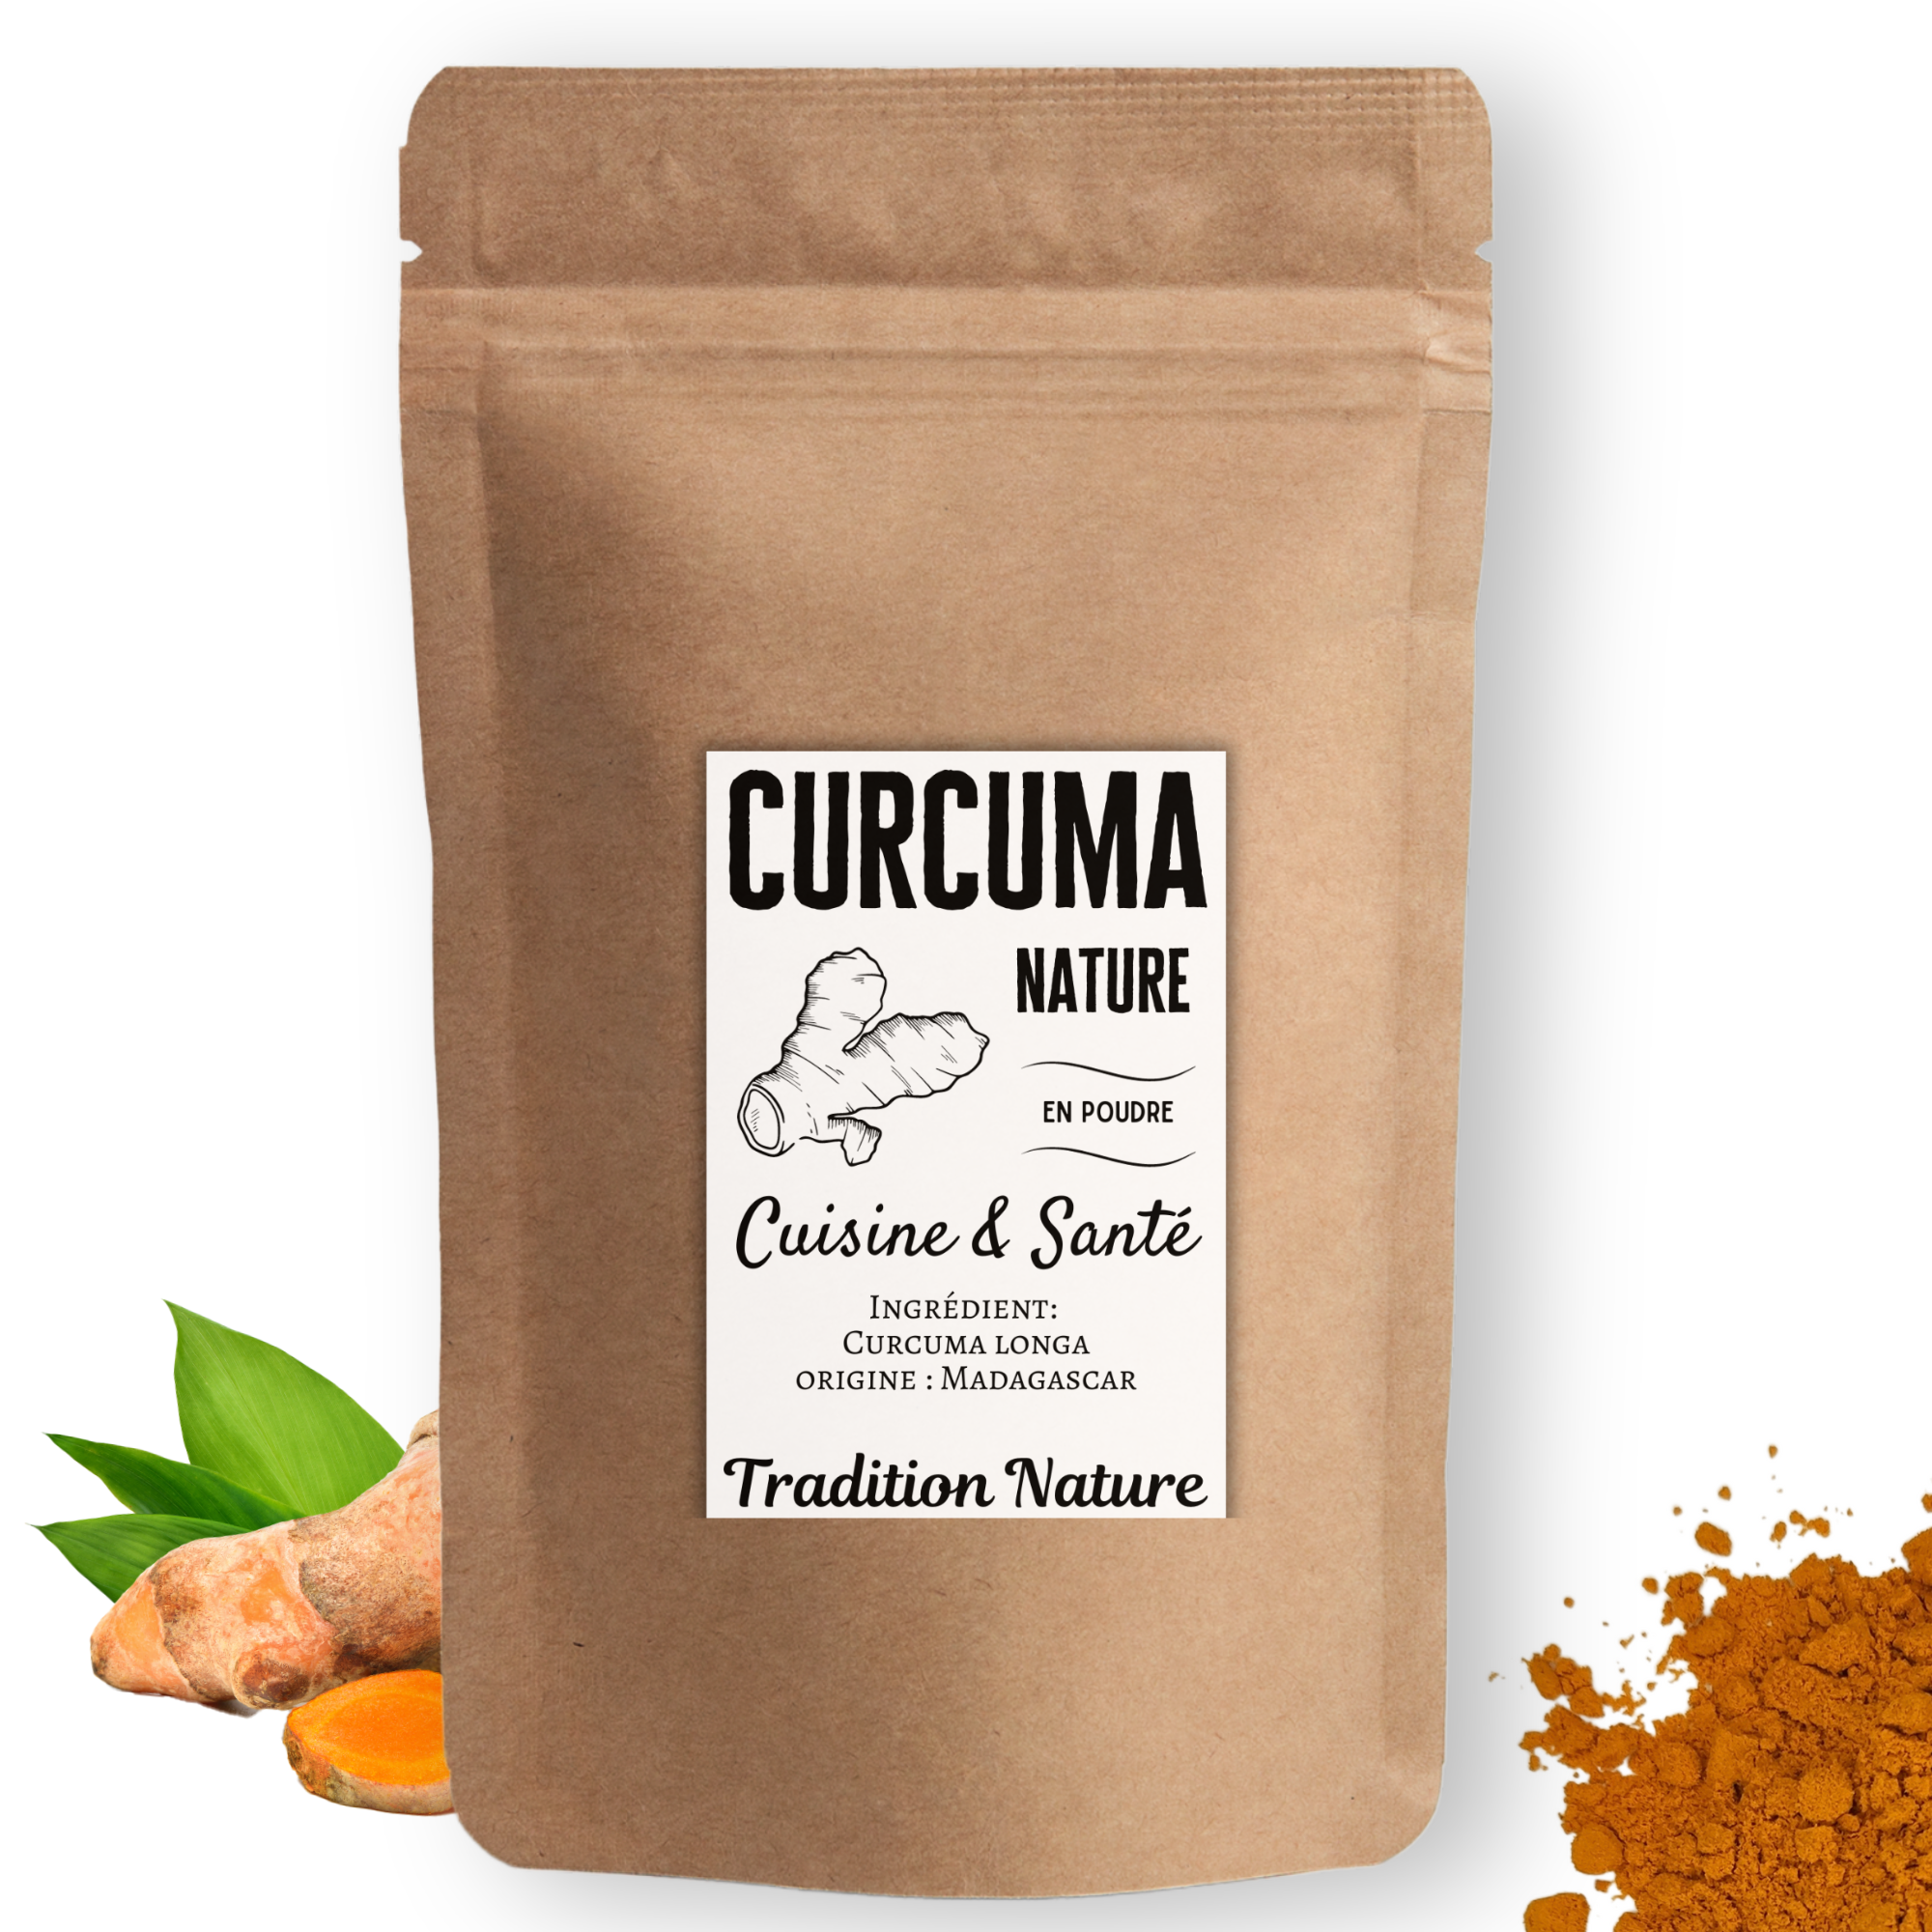 Curcuma nature poudre – Tradition Nature